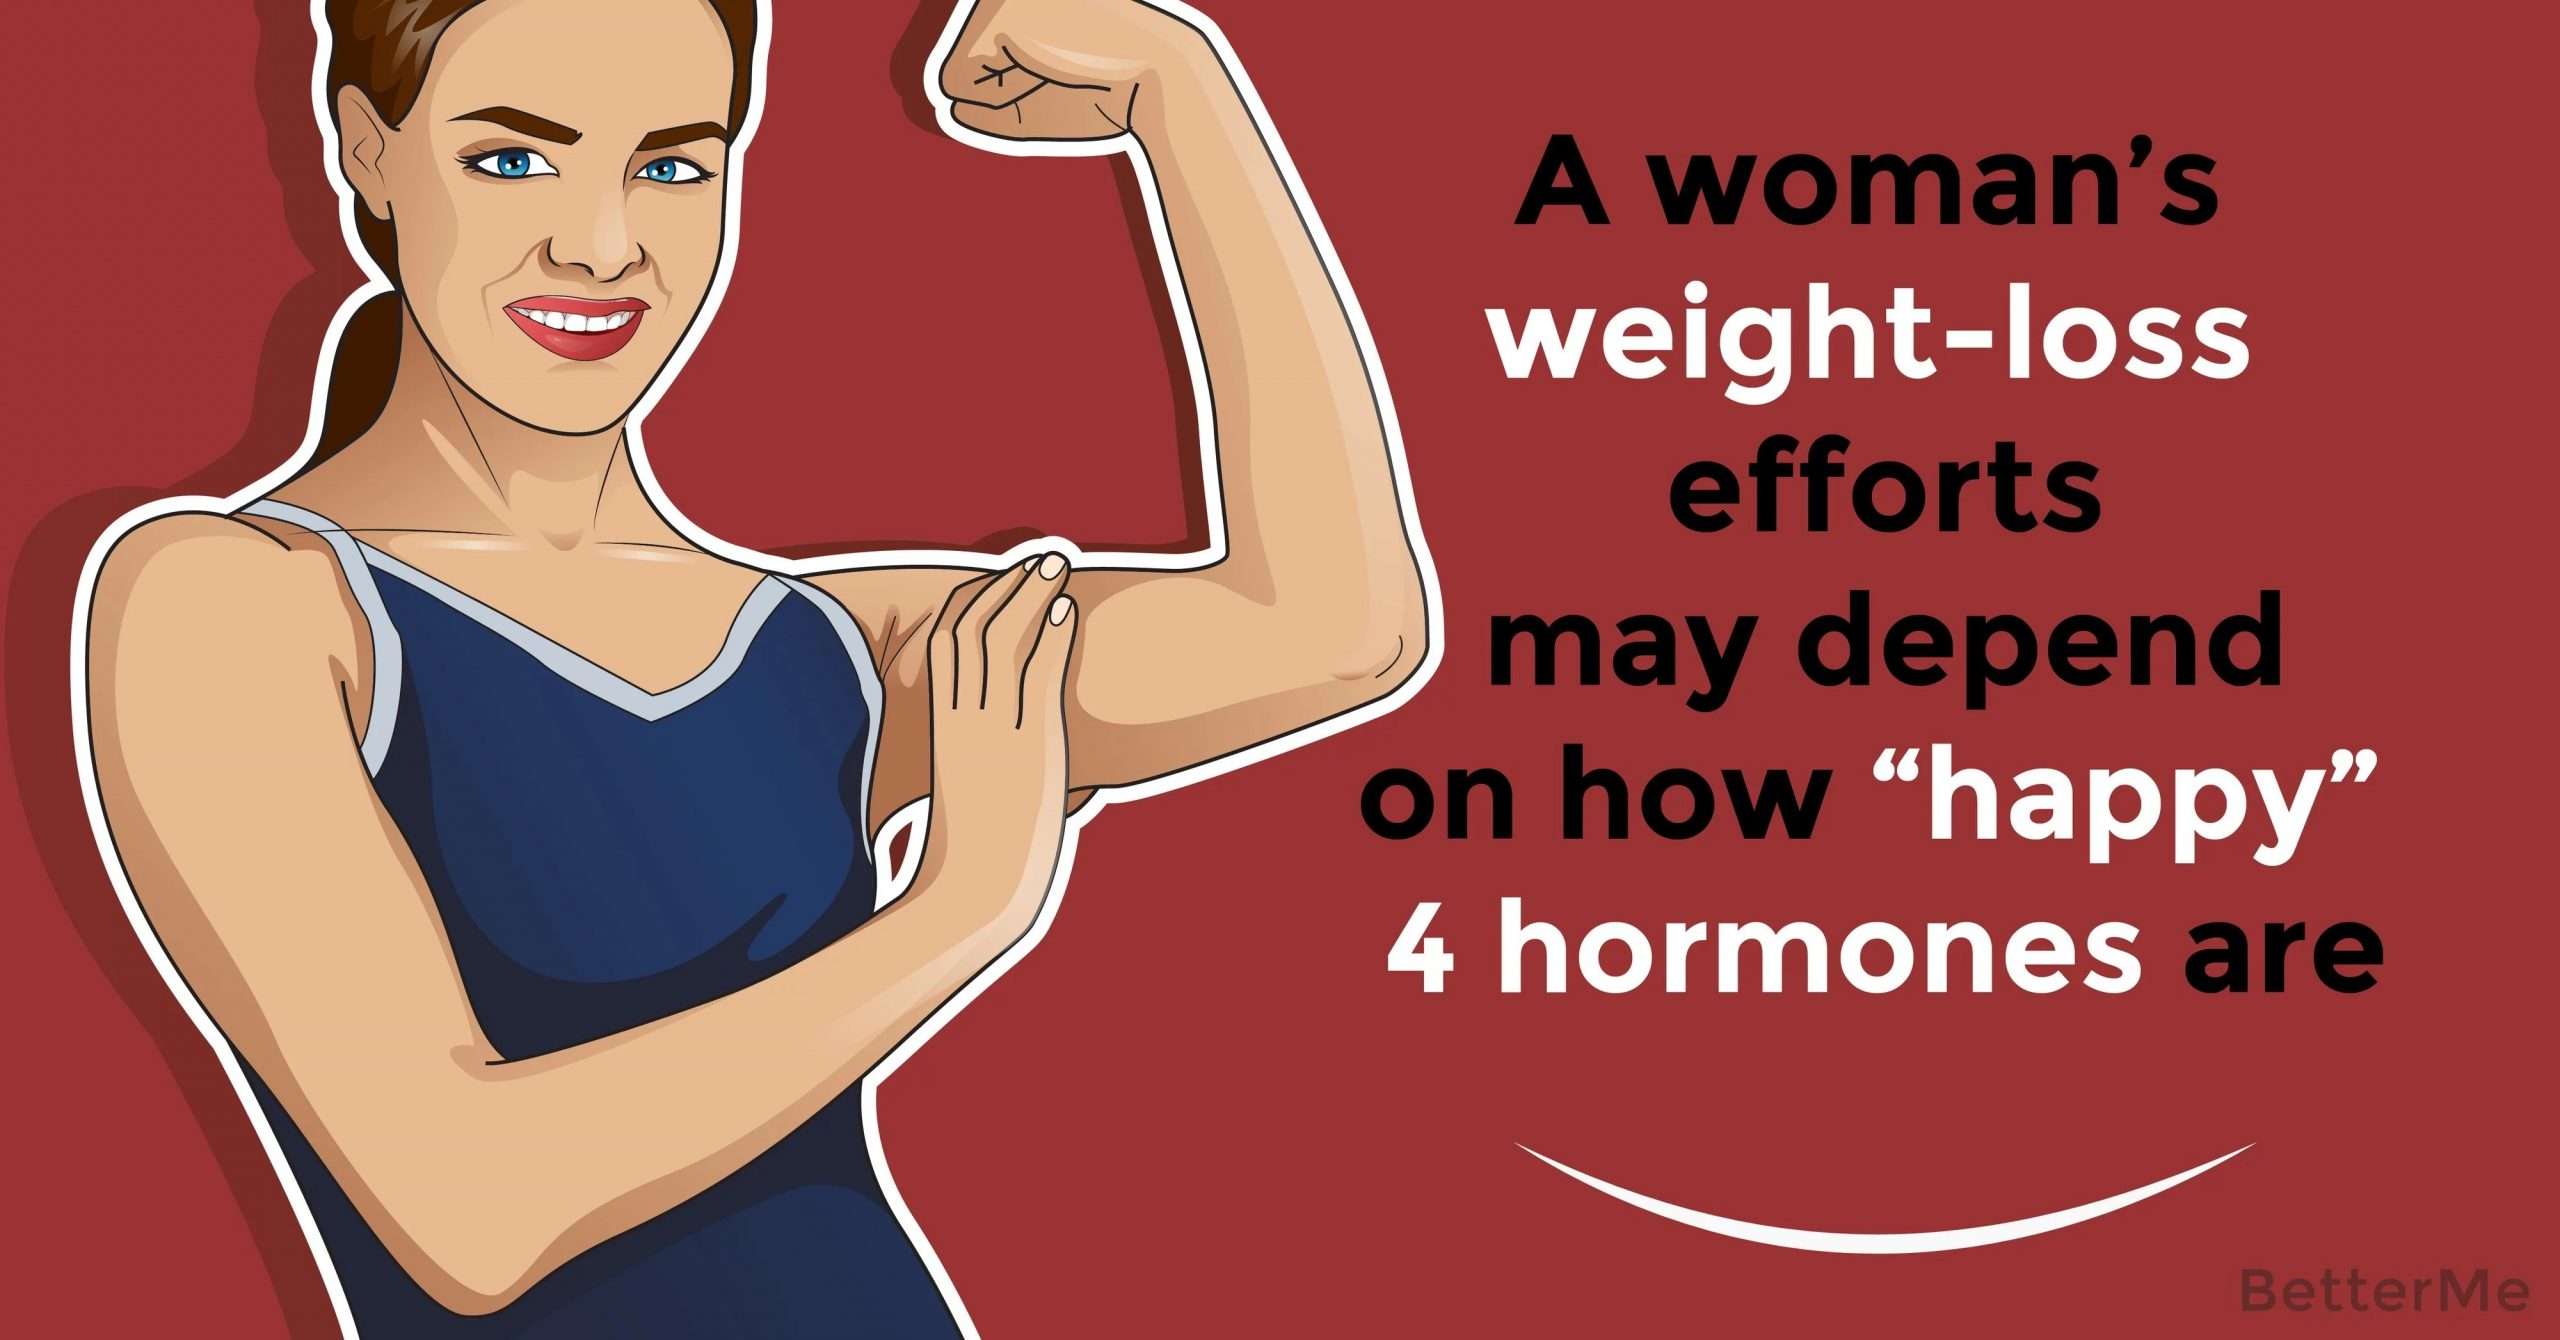 A womanâs weight